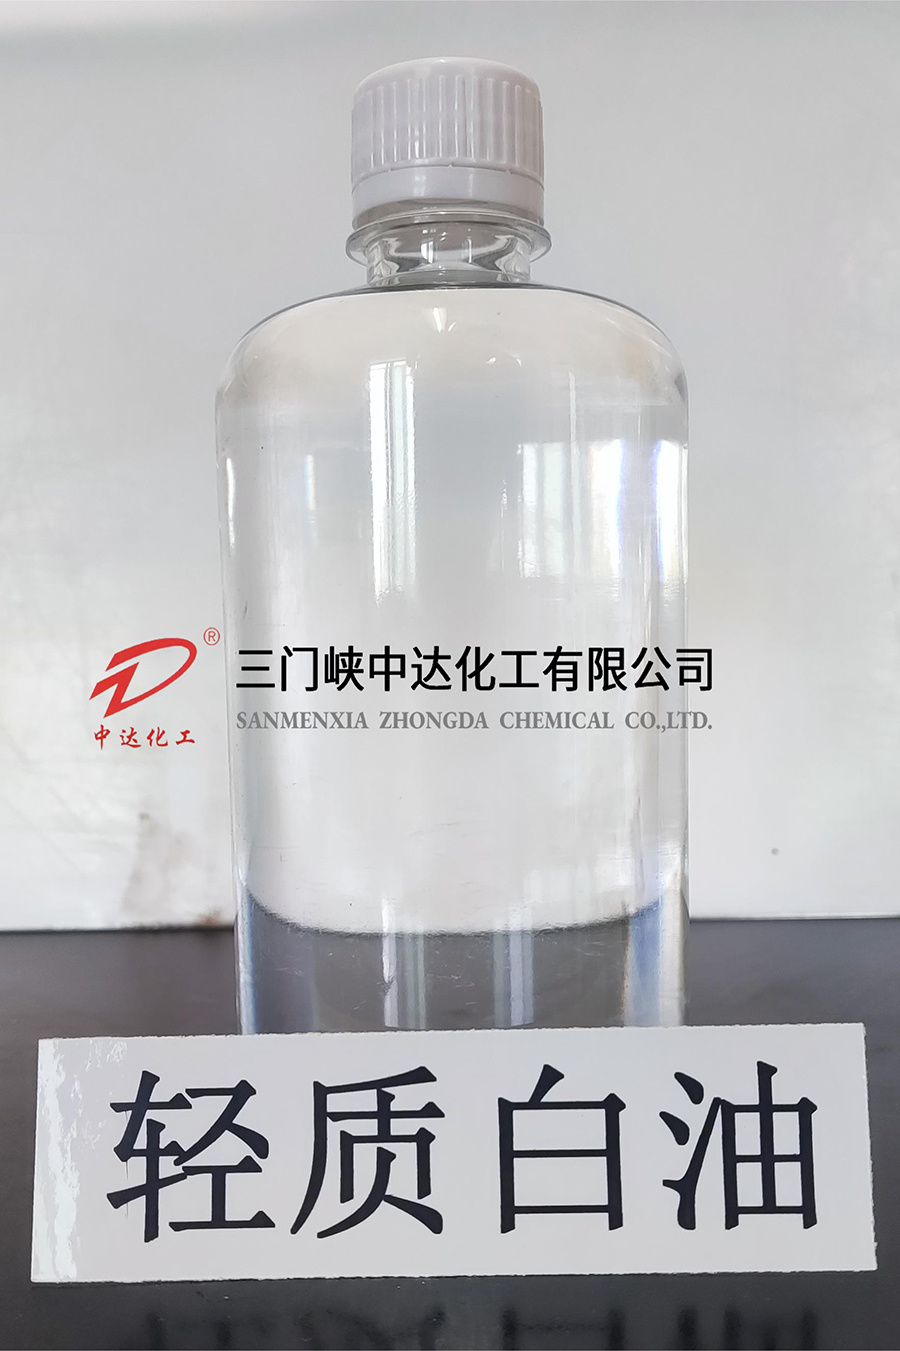 Light white oil (isoparaffin)